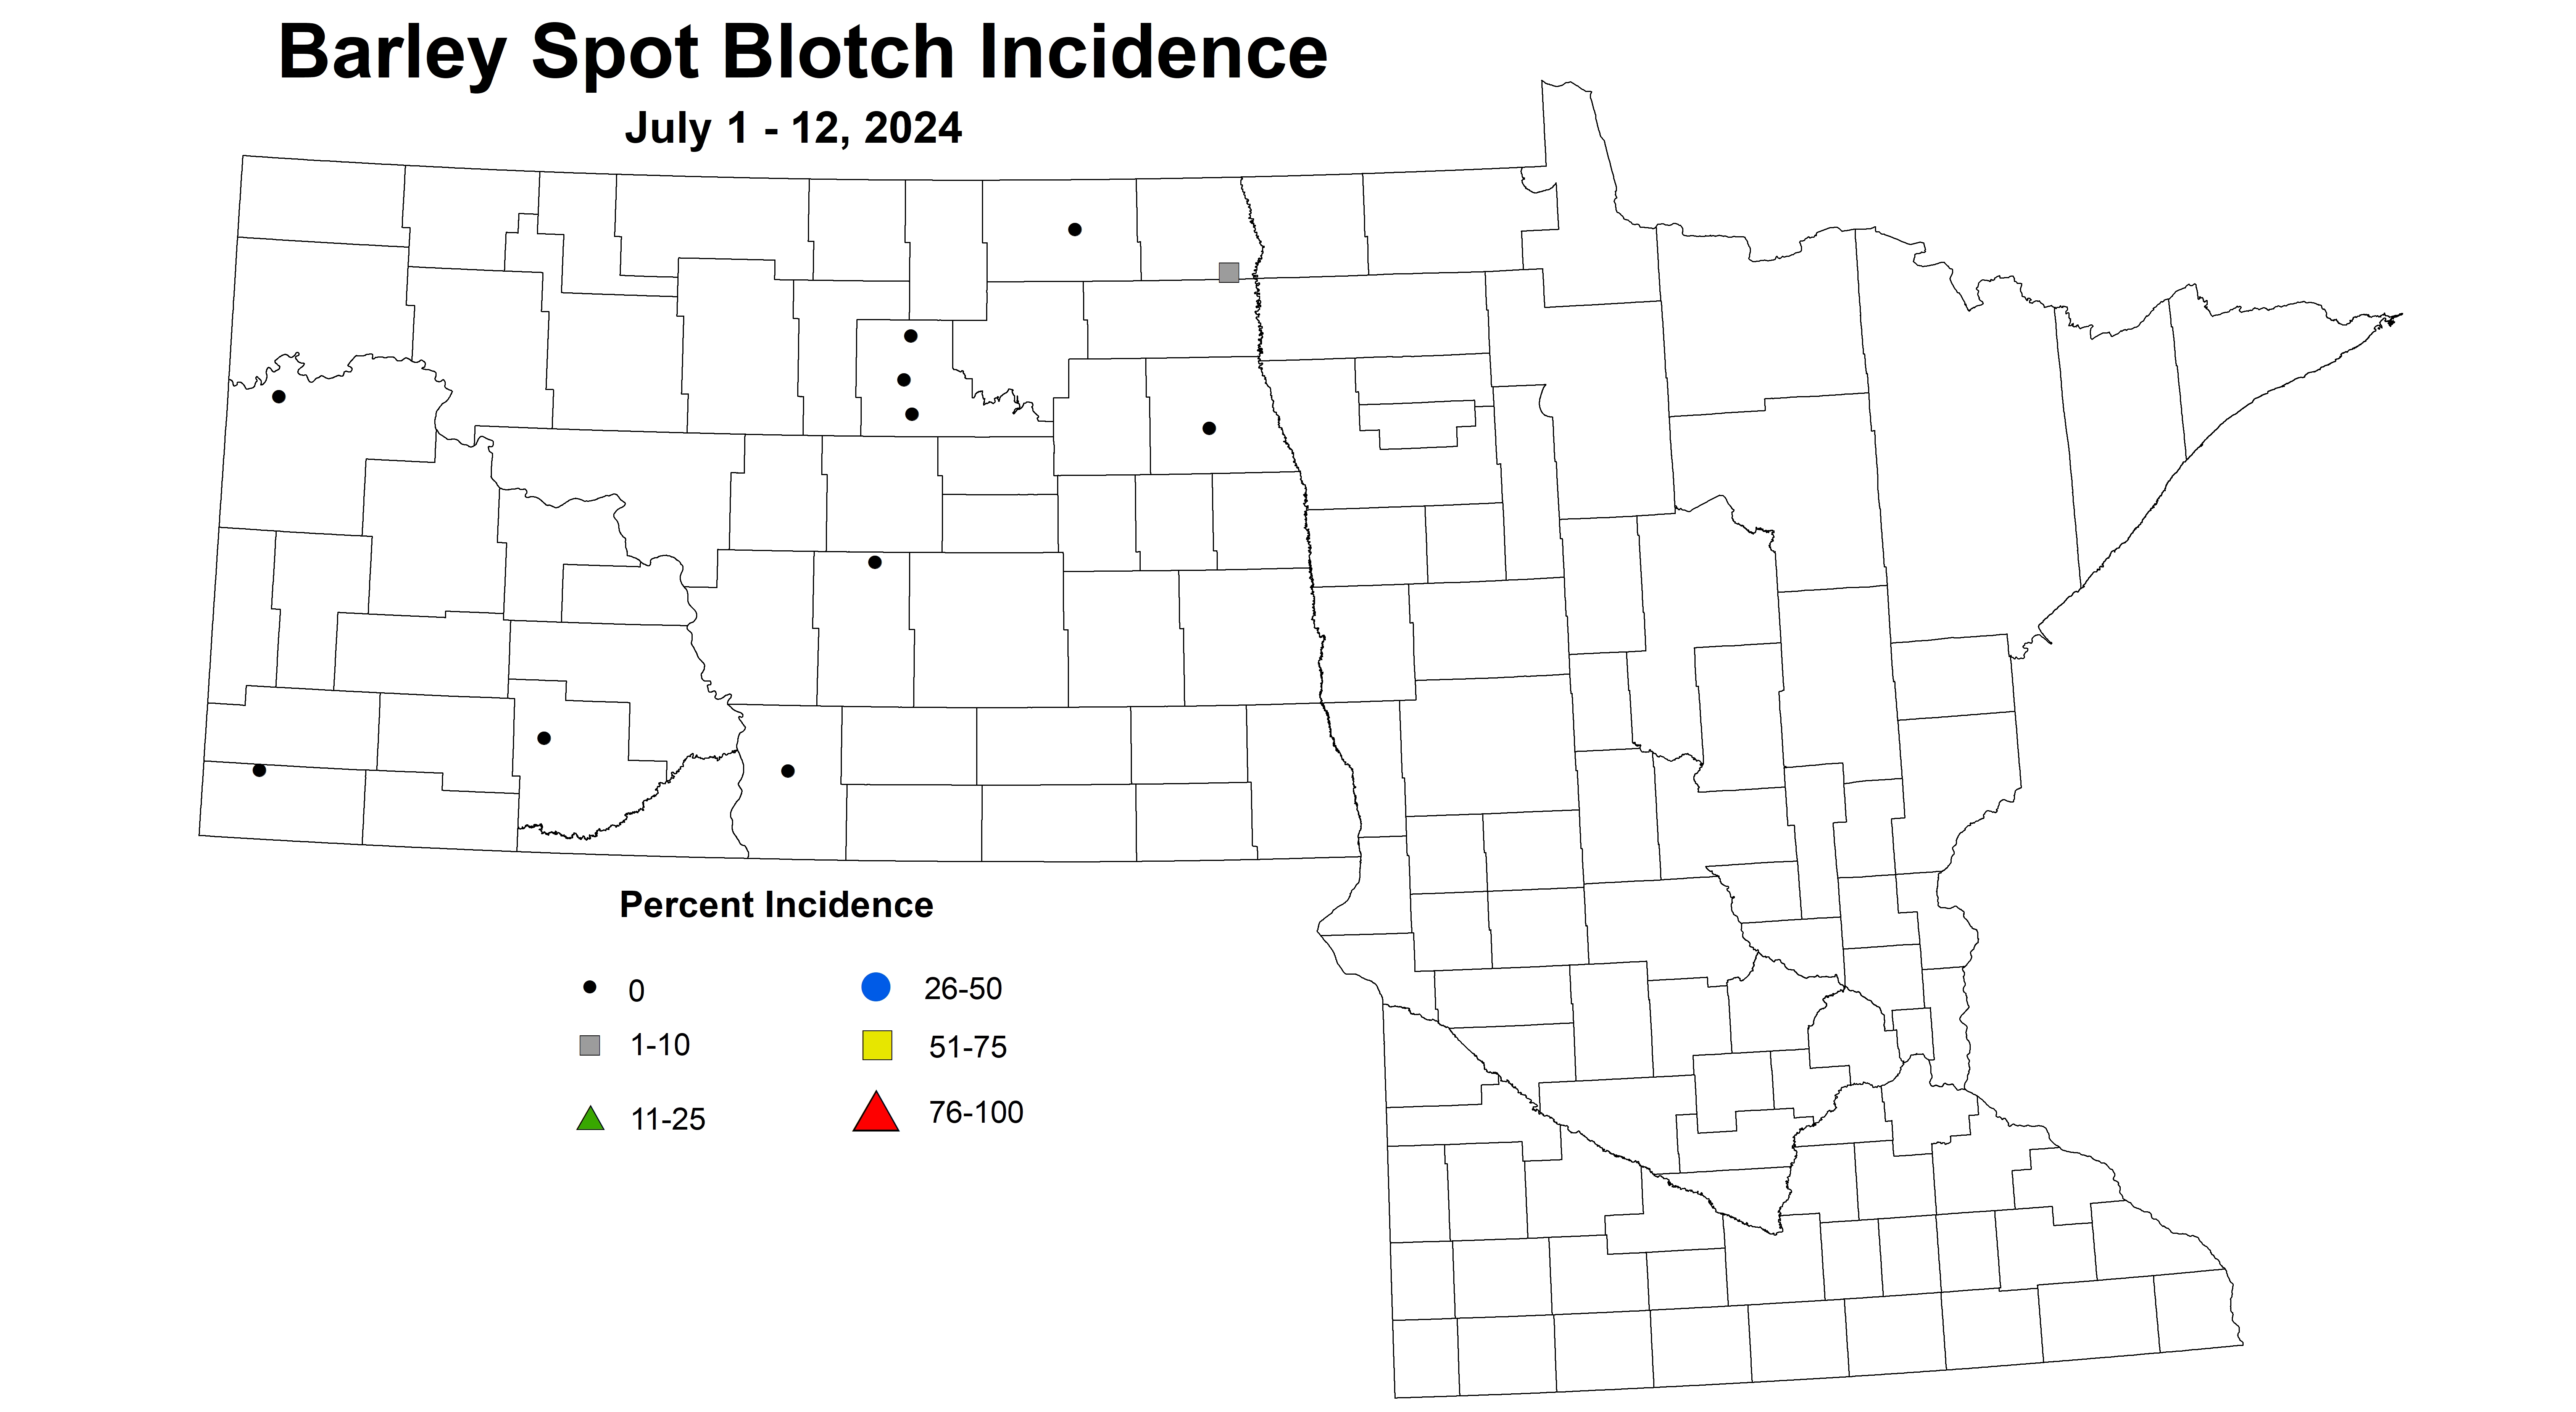 barley spot blotch incidence July 1-12 2024